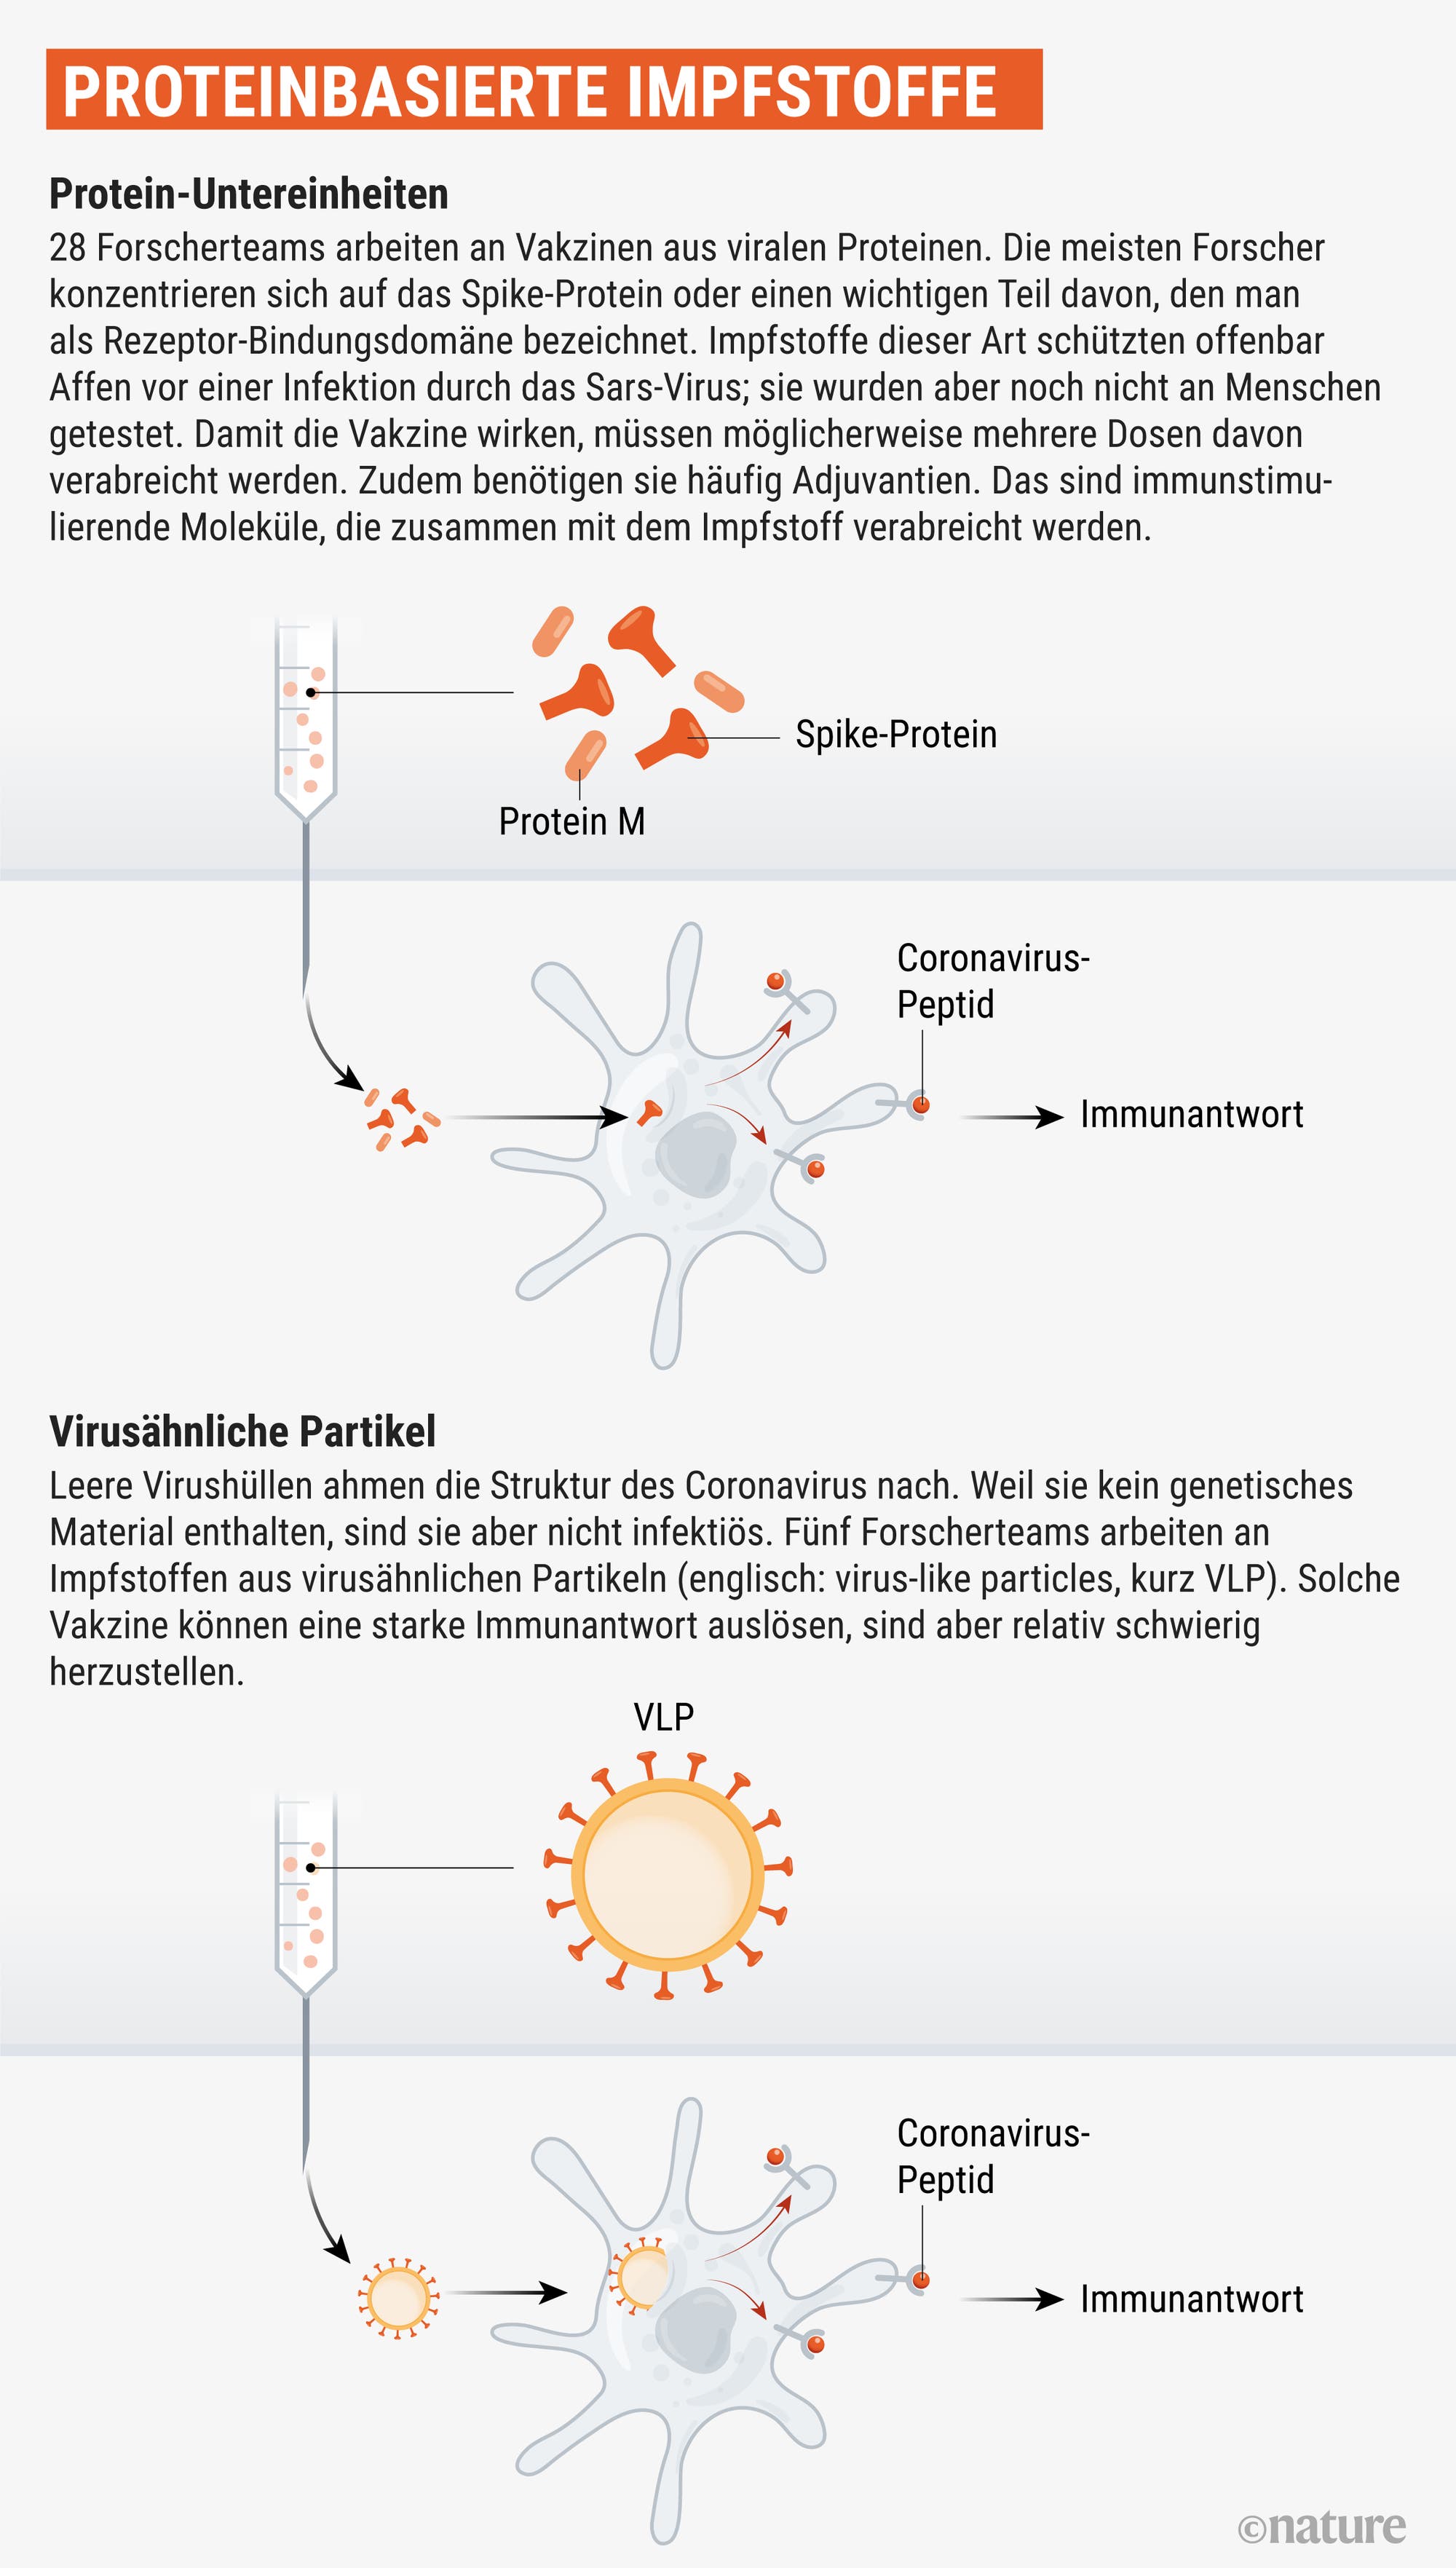 Bestimmte Virusproteine oder -partikel können unser Immunsystem aktivieren